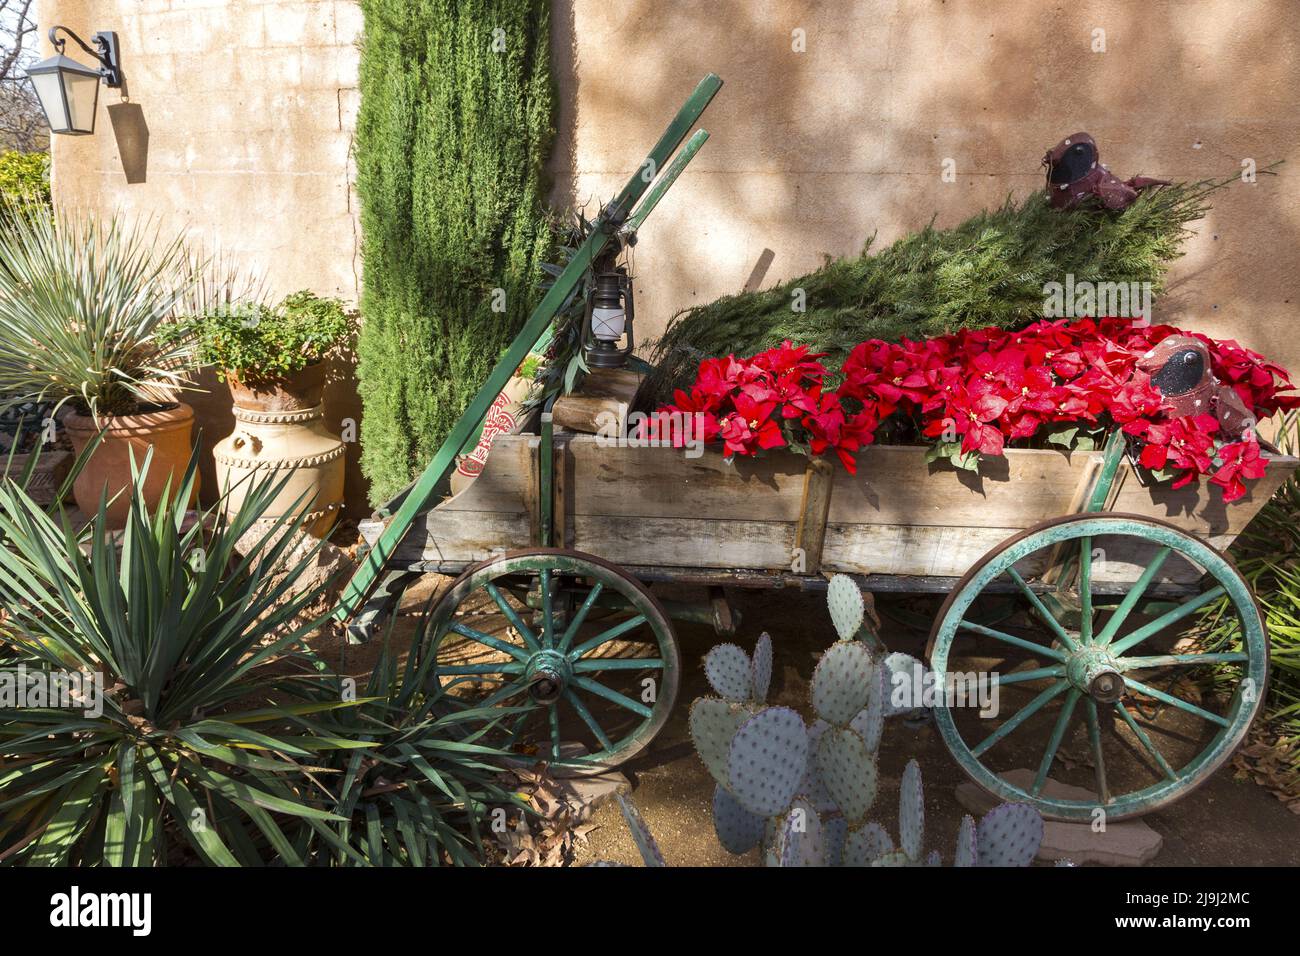 Vintage Pferdegezeichneten hölzernen Pferd Blumenwagen mit roten Blumen Green Cactus Plant Detall. Tlaquepaque Spanish Arts Crafts Village, Sedona Arizona USA Stockfoto